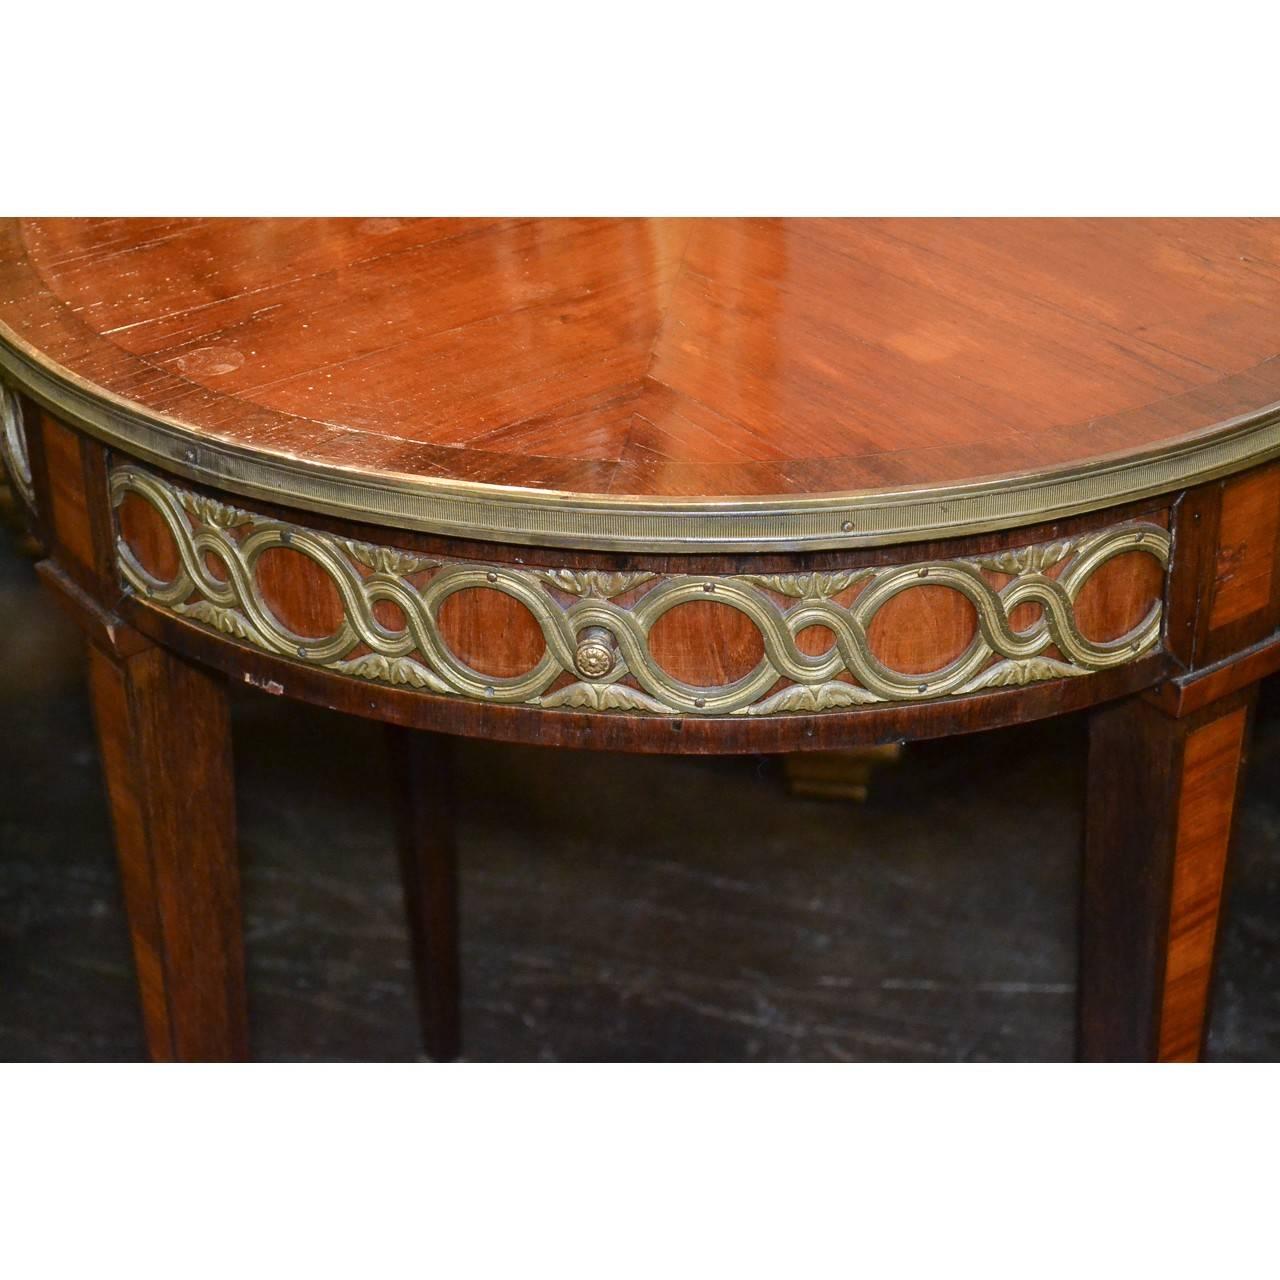 Exquisiter runder französischer Beistelltisch oder Bouillotte-Tisch aus Königsholz und Palisander aus dem 19. Jahrhundert mit einer ausziehbaren Getränkeschublade mit Ledereinlage. Der Fries ist rundherum mit stilisierten Doré-Bronzebeschlägen